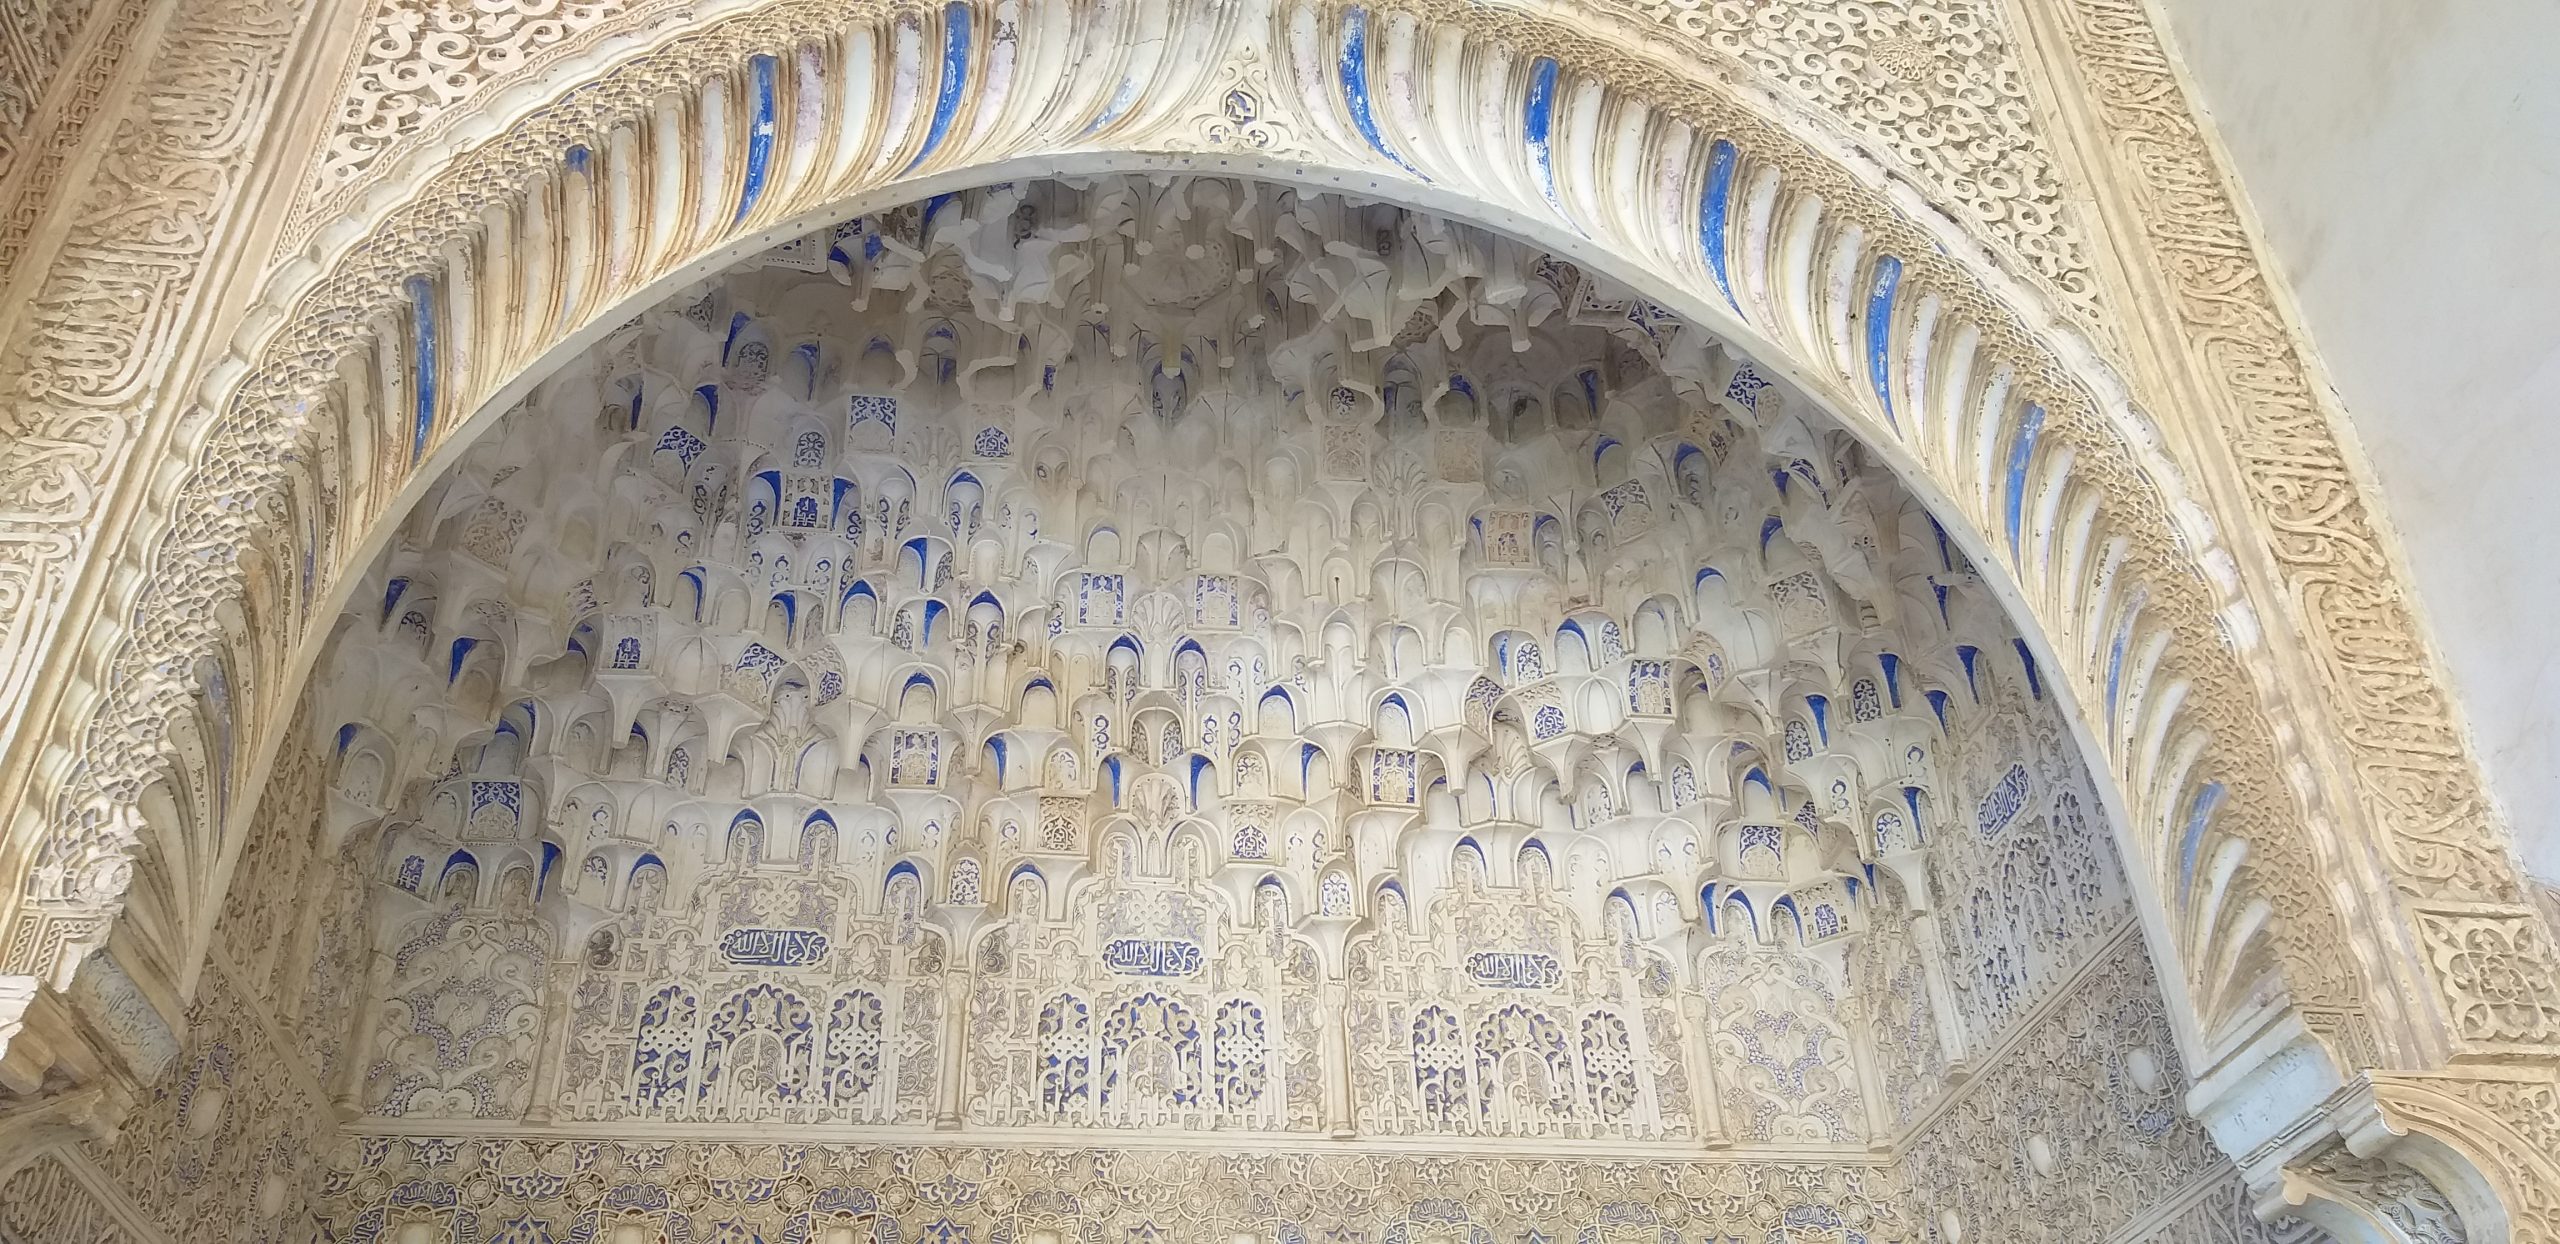 La Alhambra, Granada, Andalusië